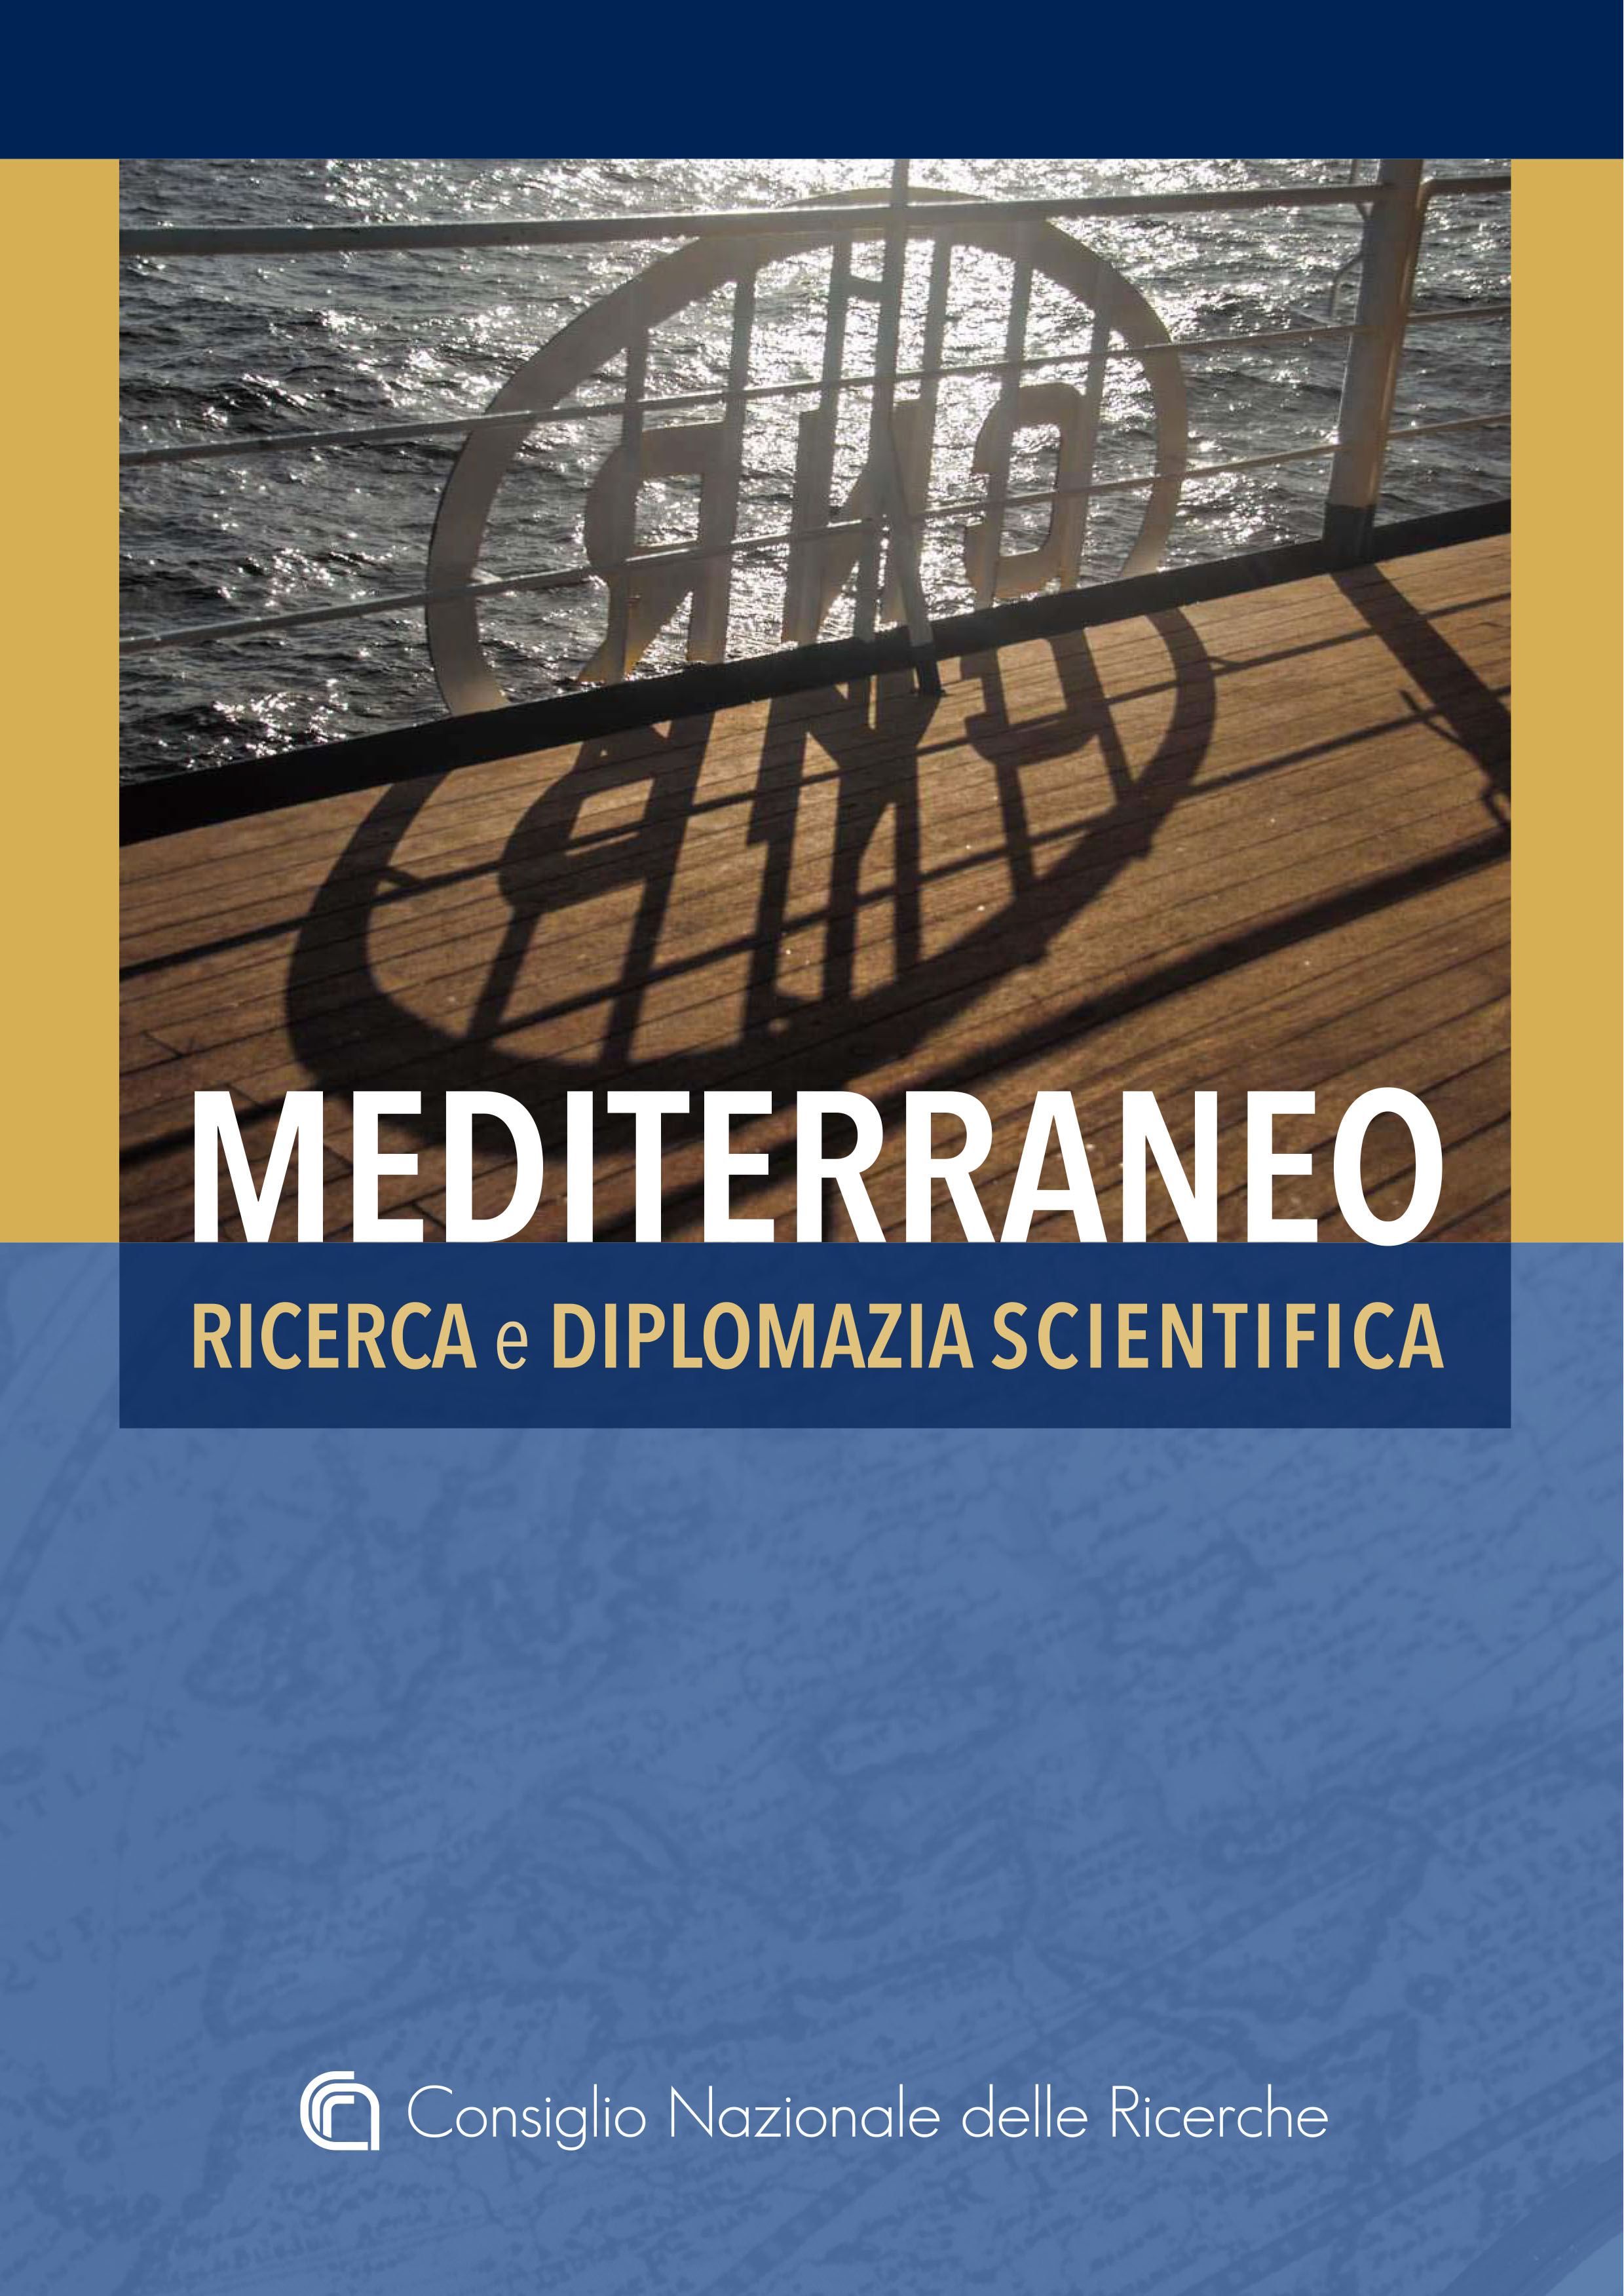 Copertina libro "Mediterraneo. Ricerca e diplomazia scientifica"